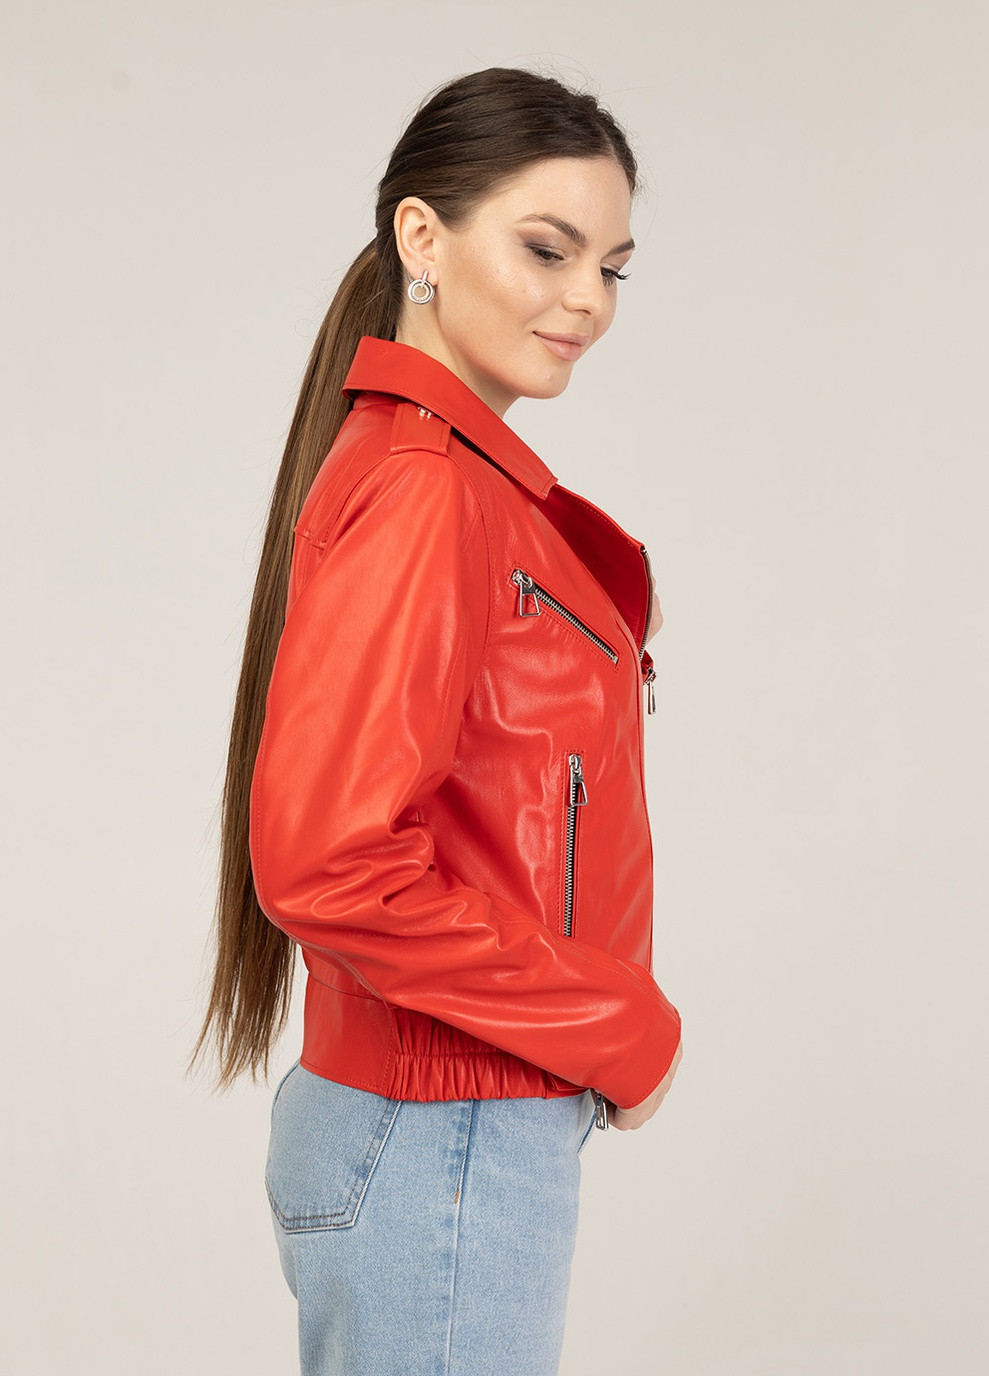 Красная демисезонная женская кожаная куртка весна Fabio Monti